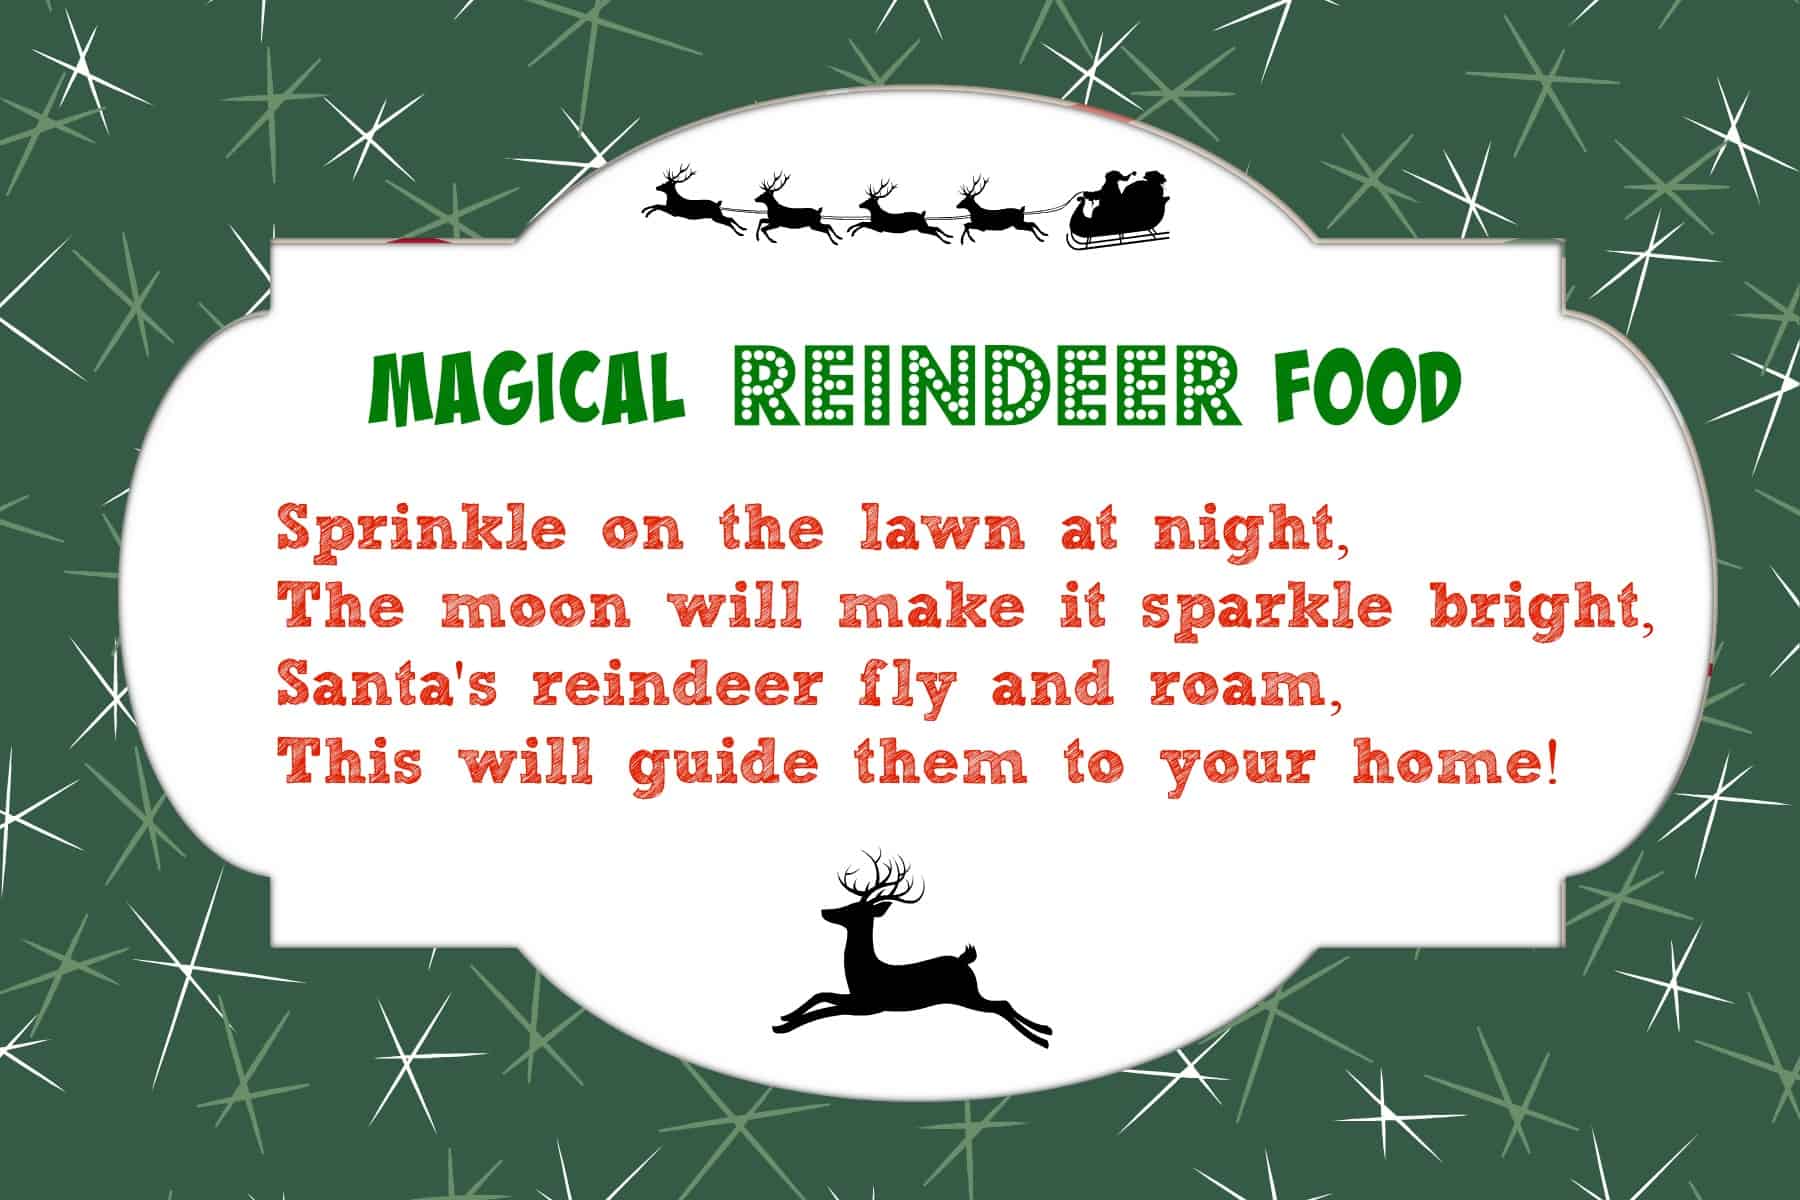 Magical reindeer food recipe free printable poem tag